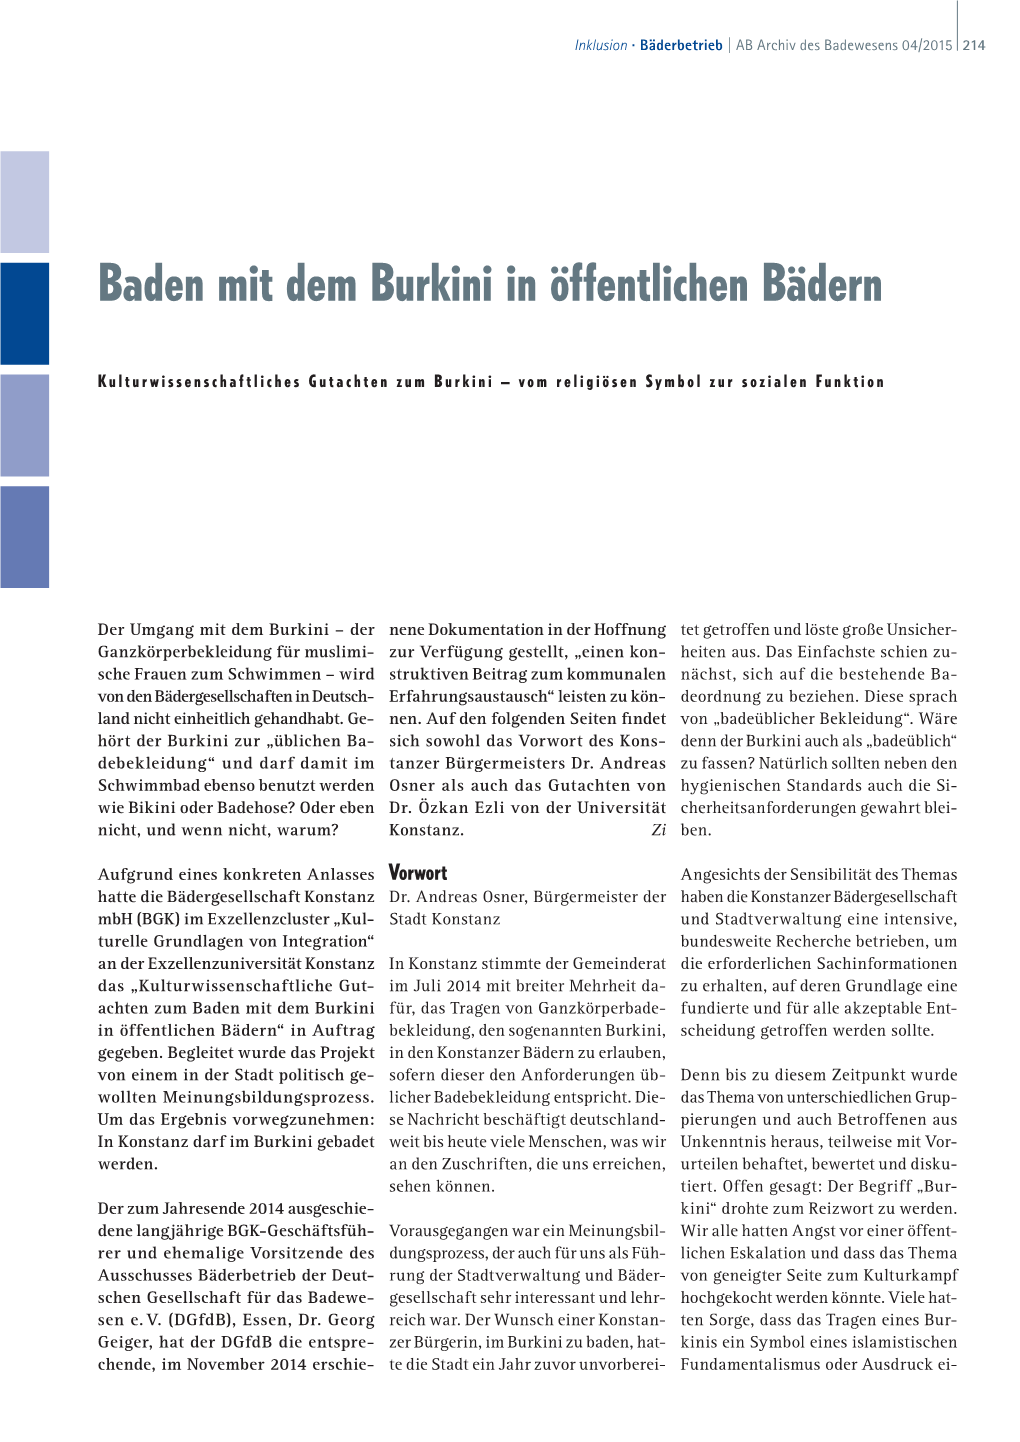 Baden Mit Dem Burkini in Öffentlichen Bädern